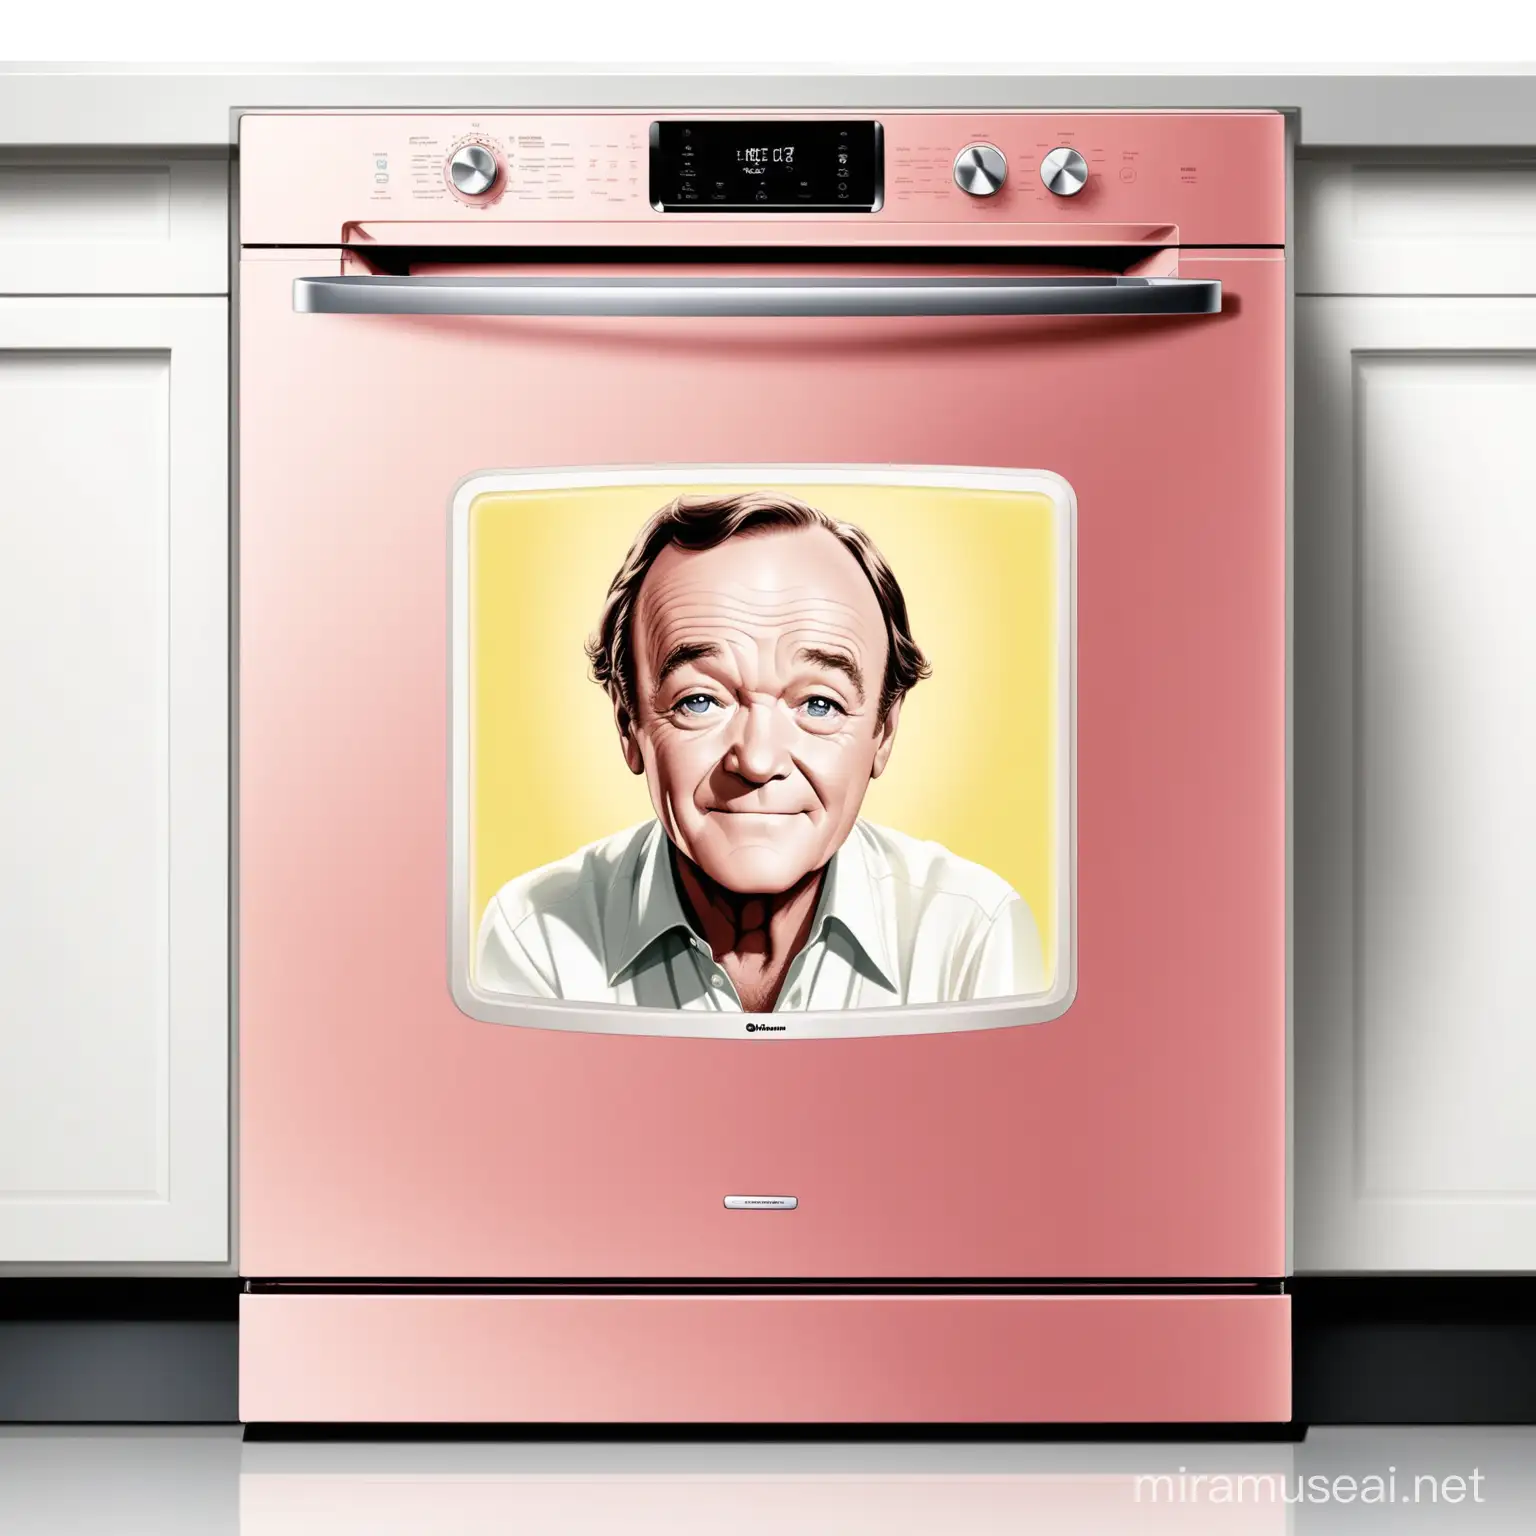 faça uma imagem de Jack Lemmon com uma smart dishwasher nas cores rosa claro, amarelo claro e branco